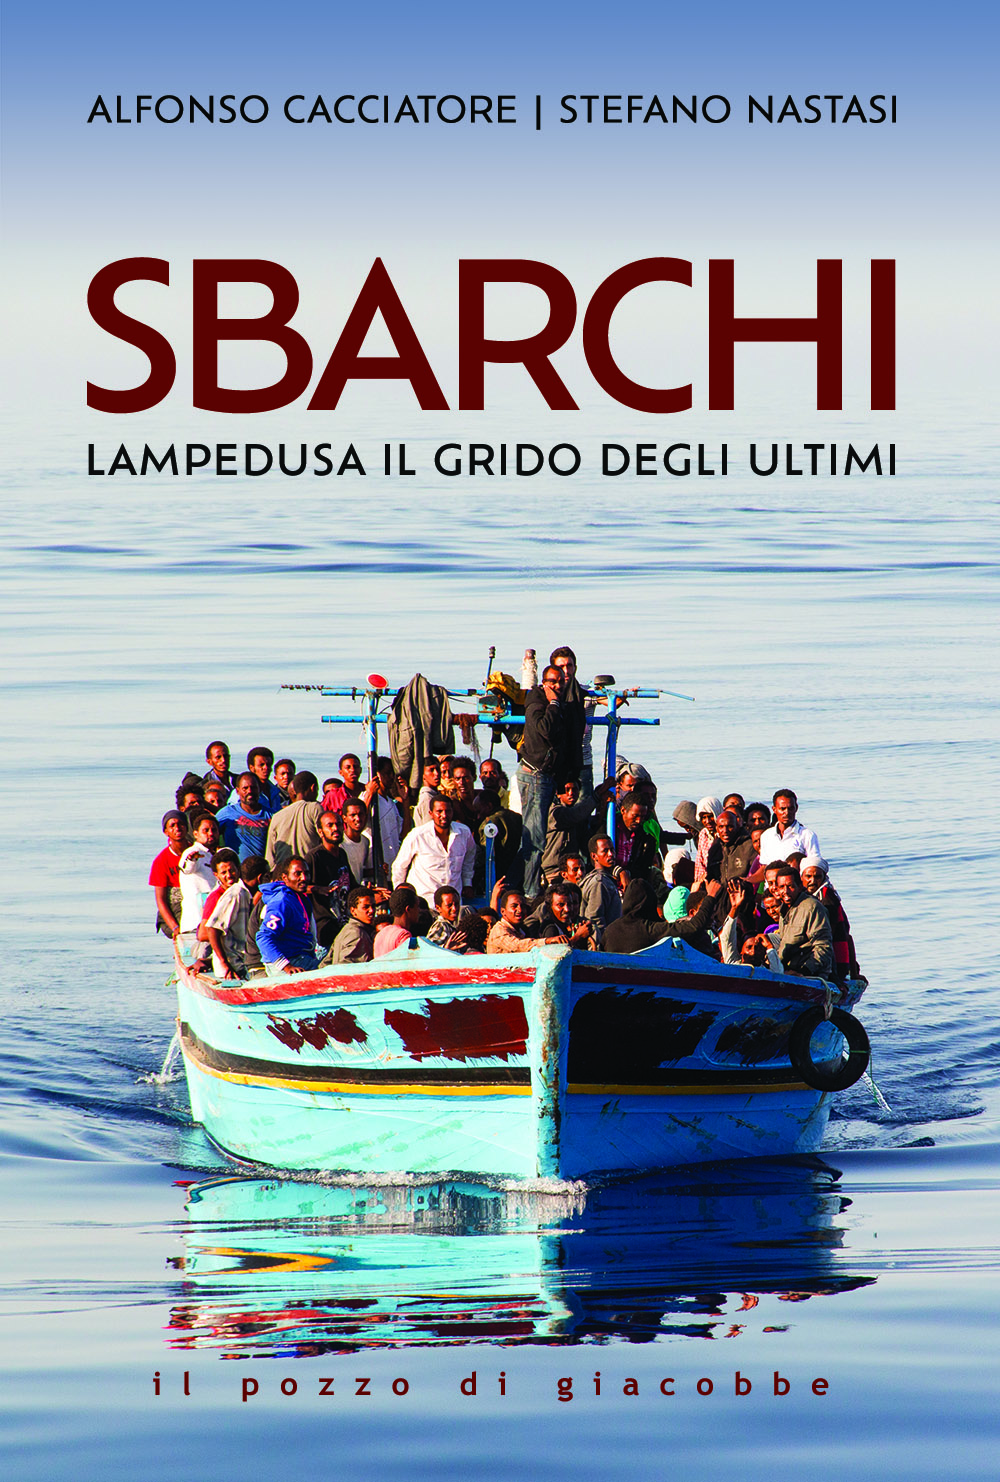 Sbarchi - Lampedusa il grido degli ultimi